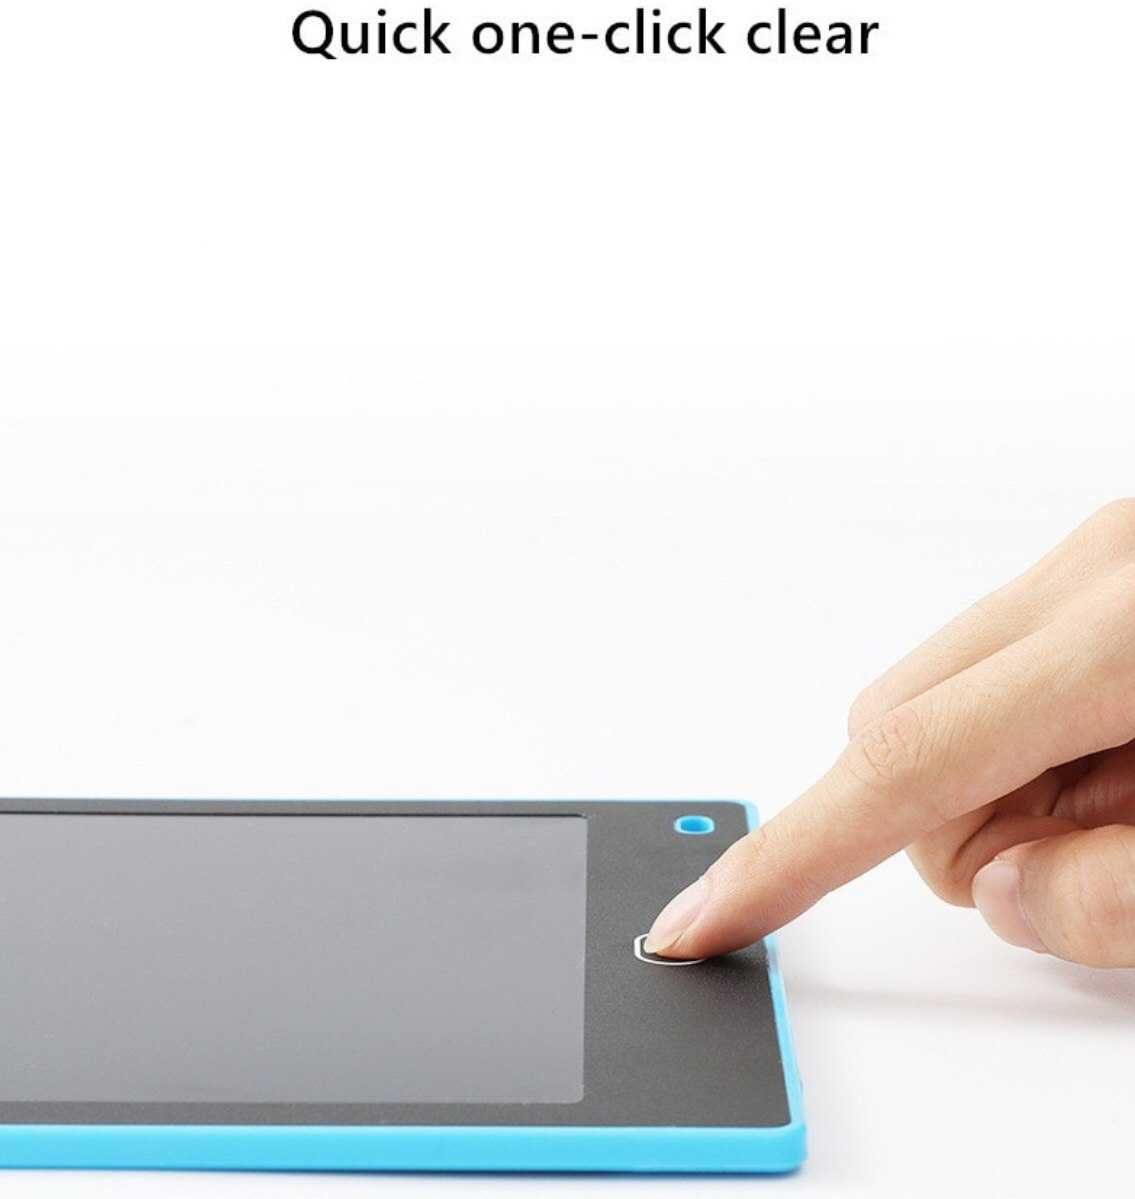 Детский LCD планшет для рисования 6,5 дюймов синий